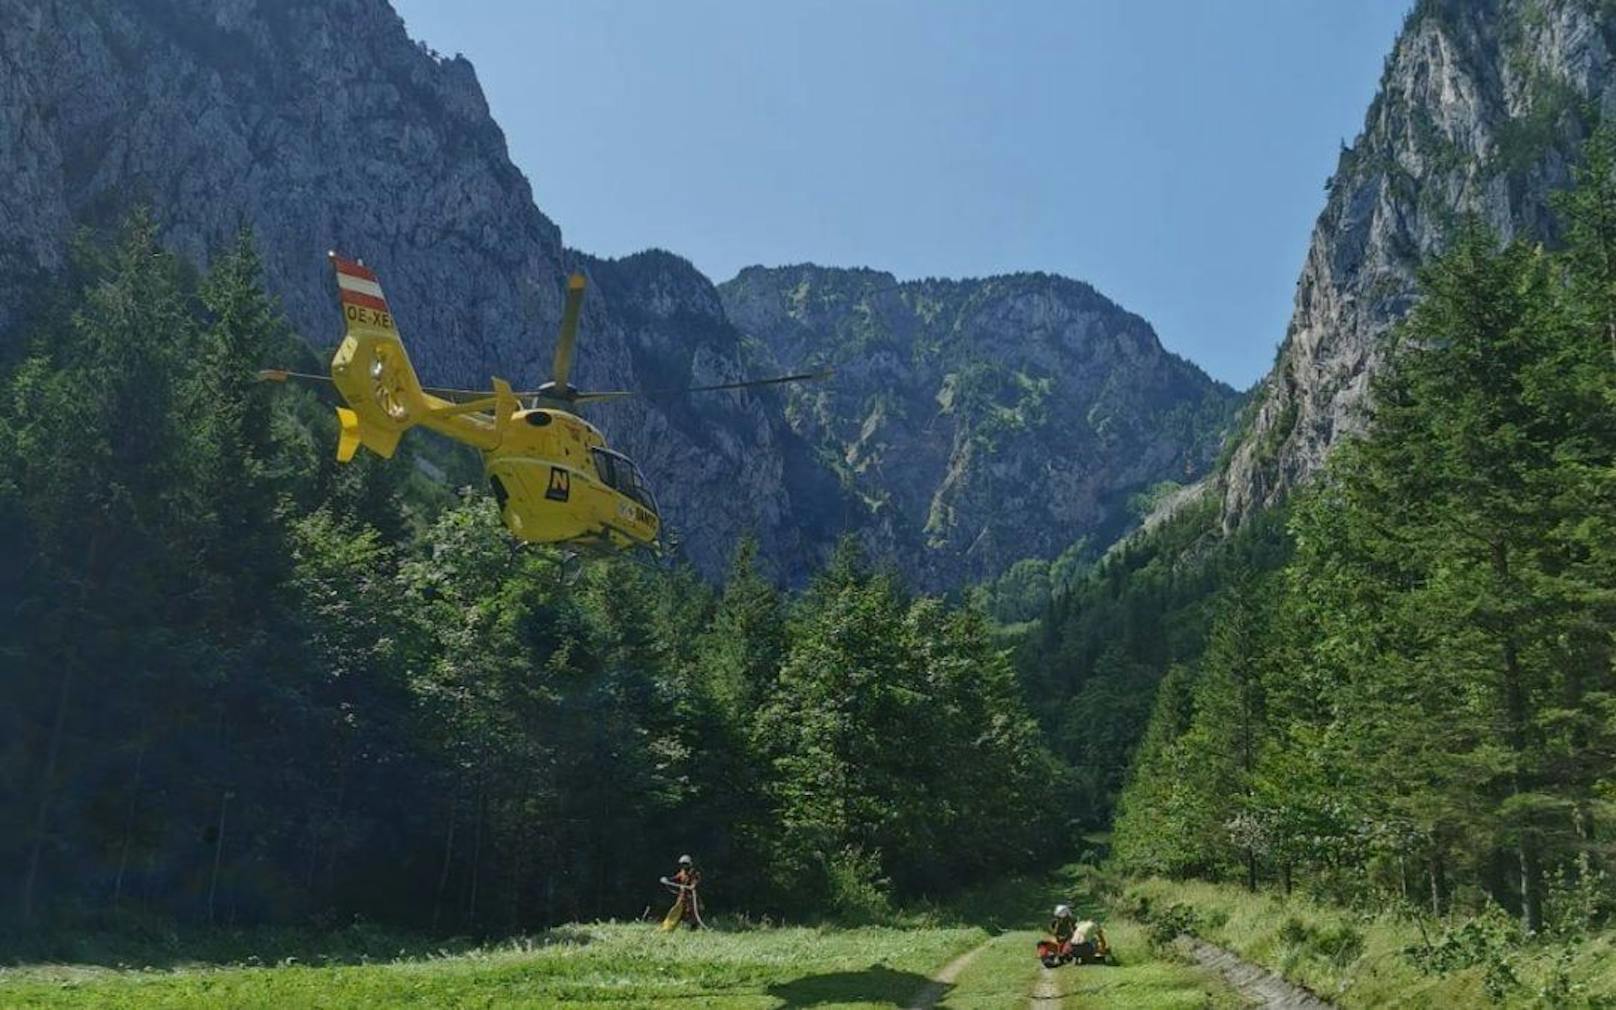 Verletzte Frau per Tau aus Rax-Klettersteig gerettet